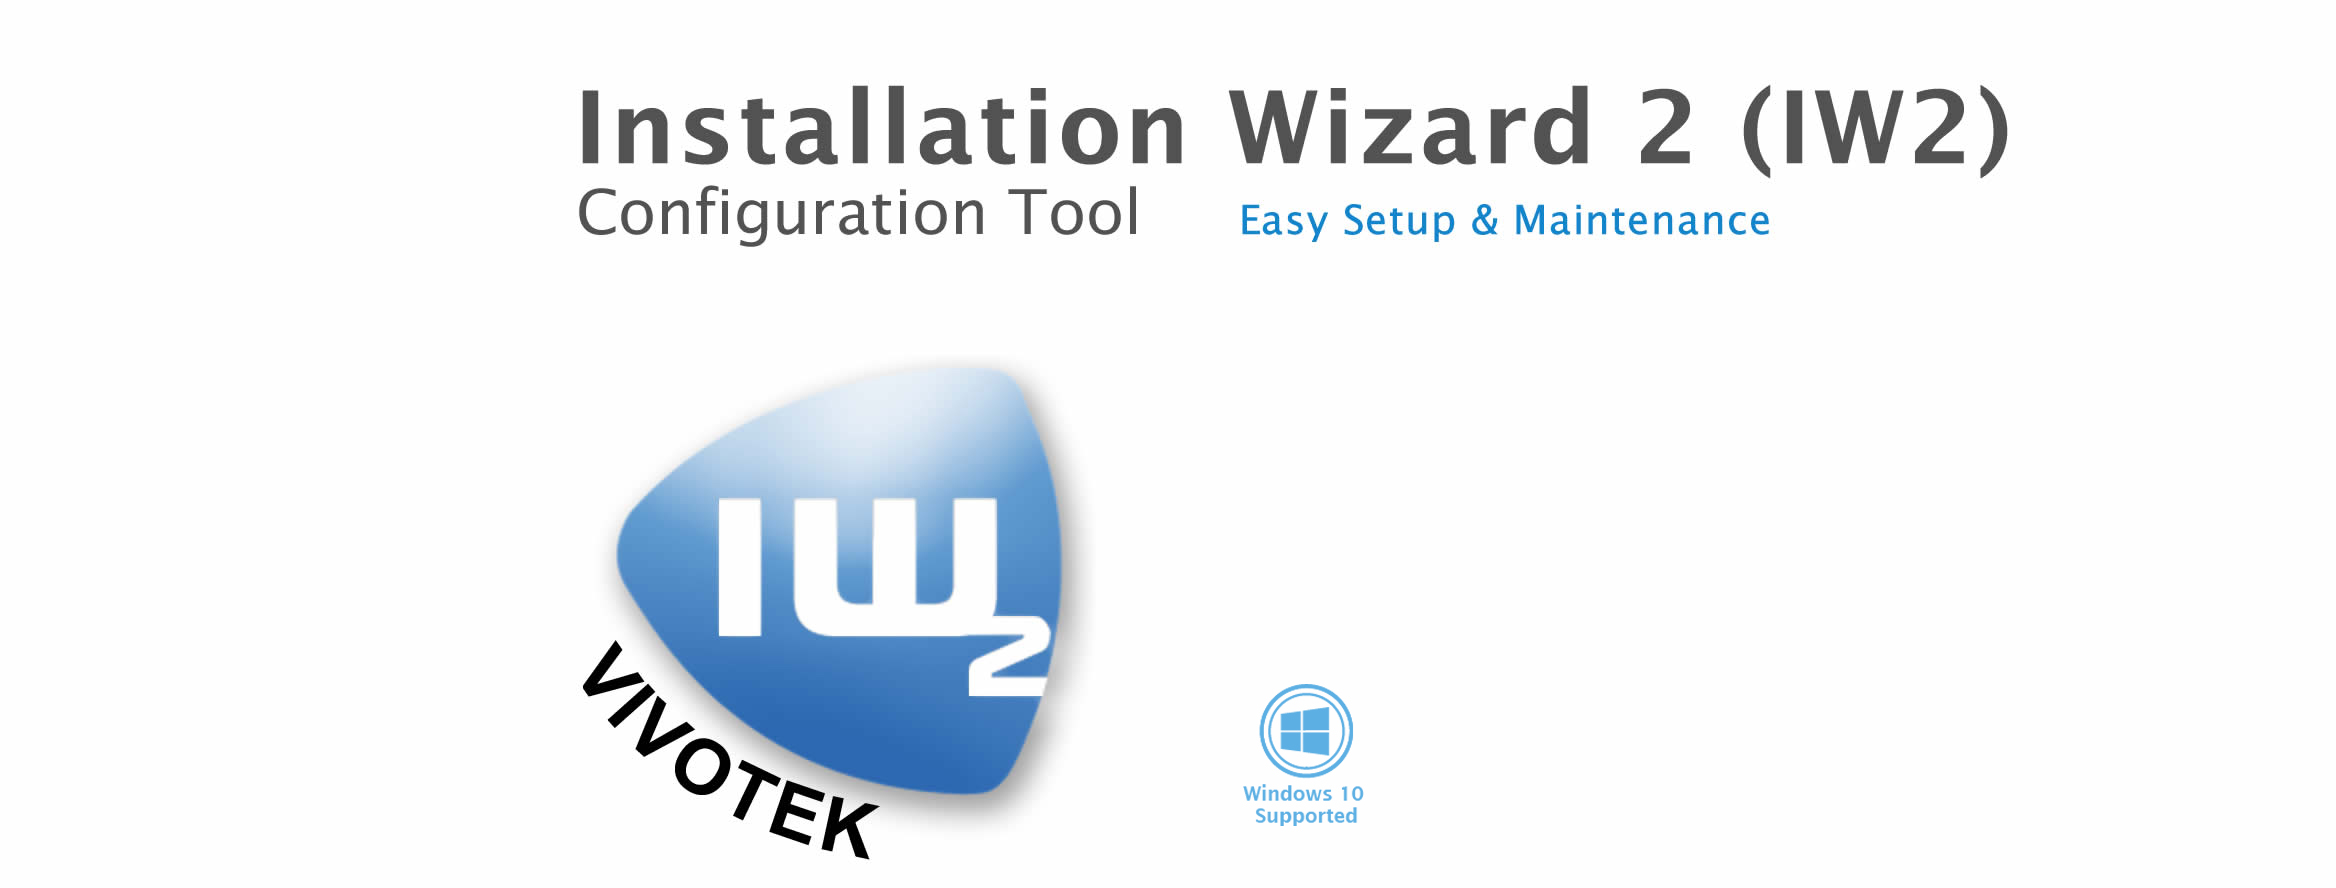 IW2 | Installation Wizard 2 | VIVOTEK